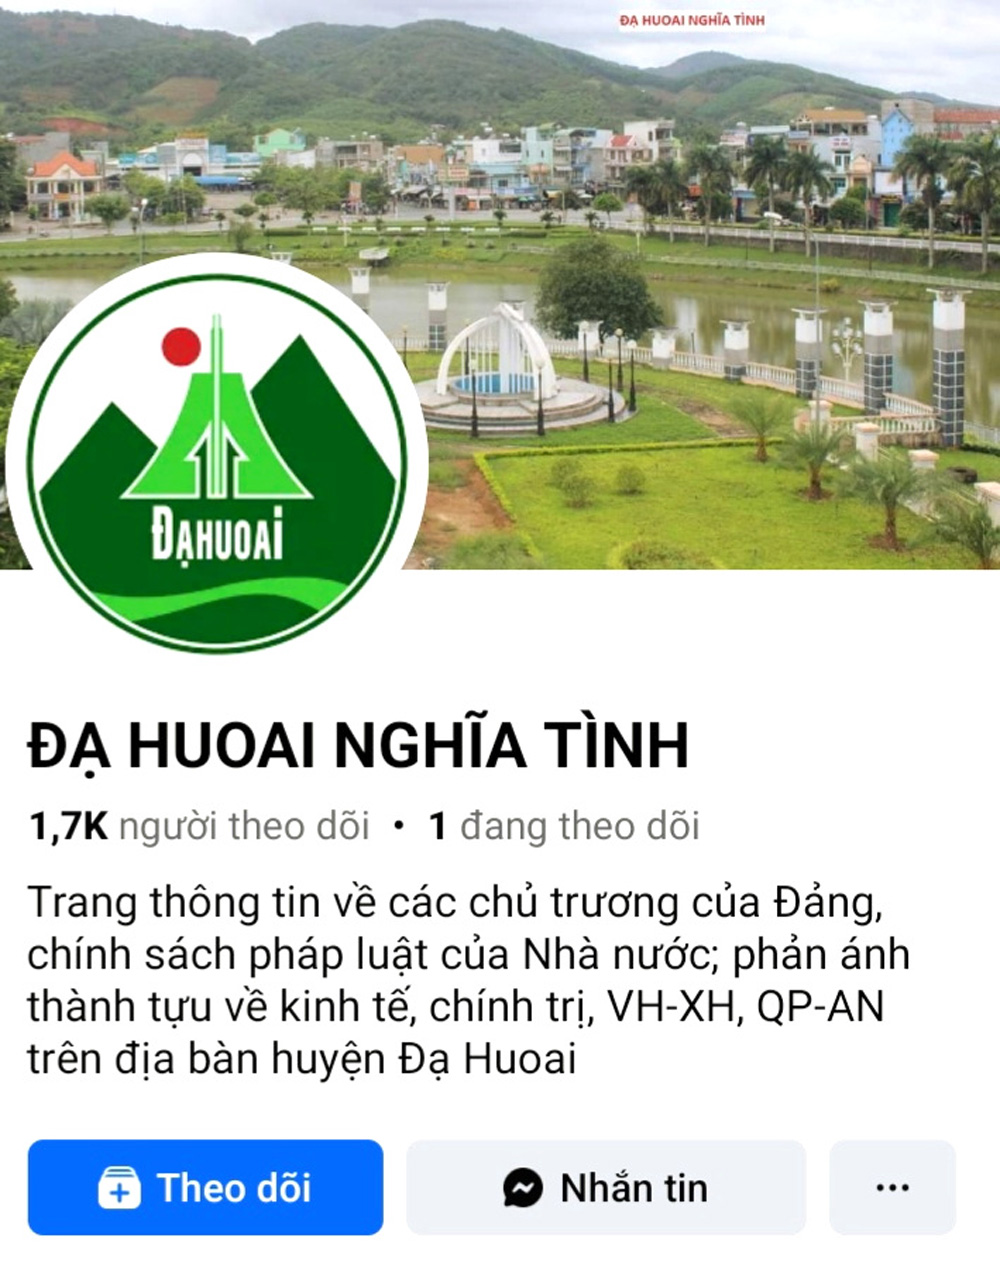 Trang facebook Đạ Huoai nghĩa tình thường xuyên đăng tải thông tin tuyên truyền về chủ trương, 
đường lối của Đảng; chính sách, pháp luật của Nhà nước